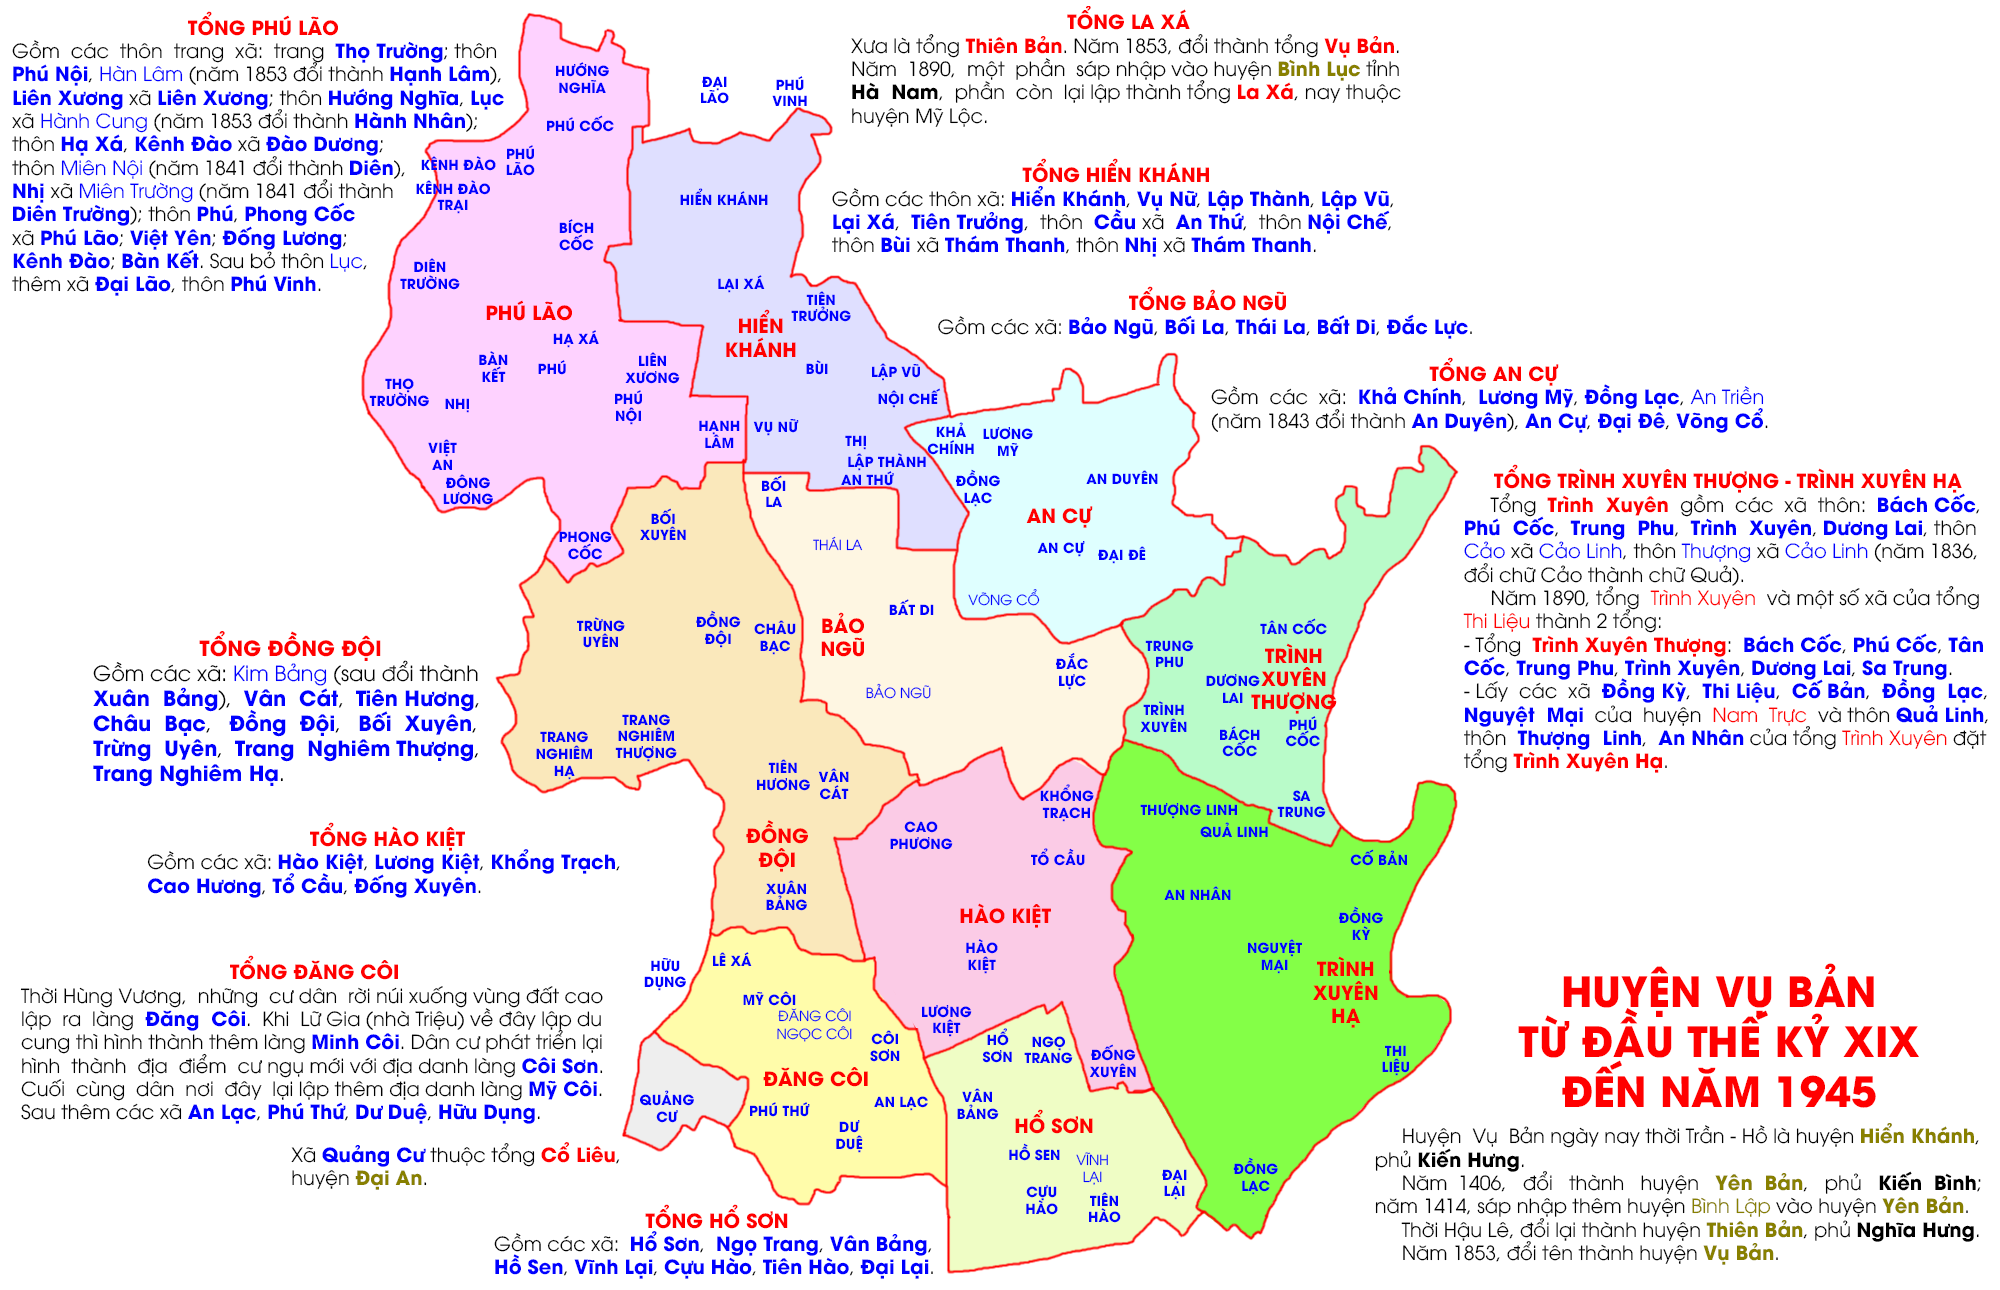 Huyện Vụ Bản từ đầu thế kỷ XIX đến năm 1945